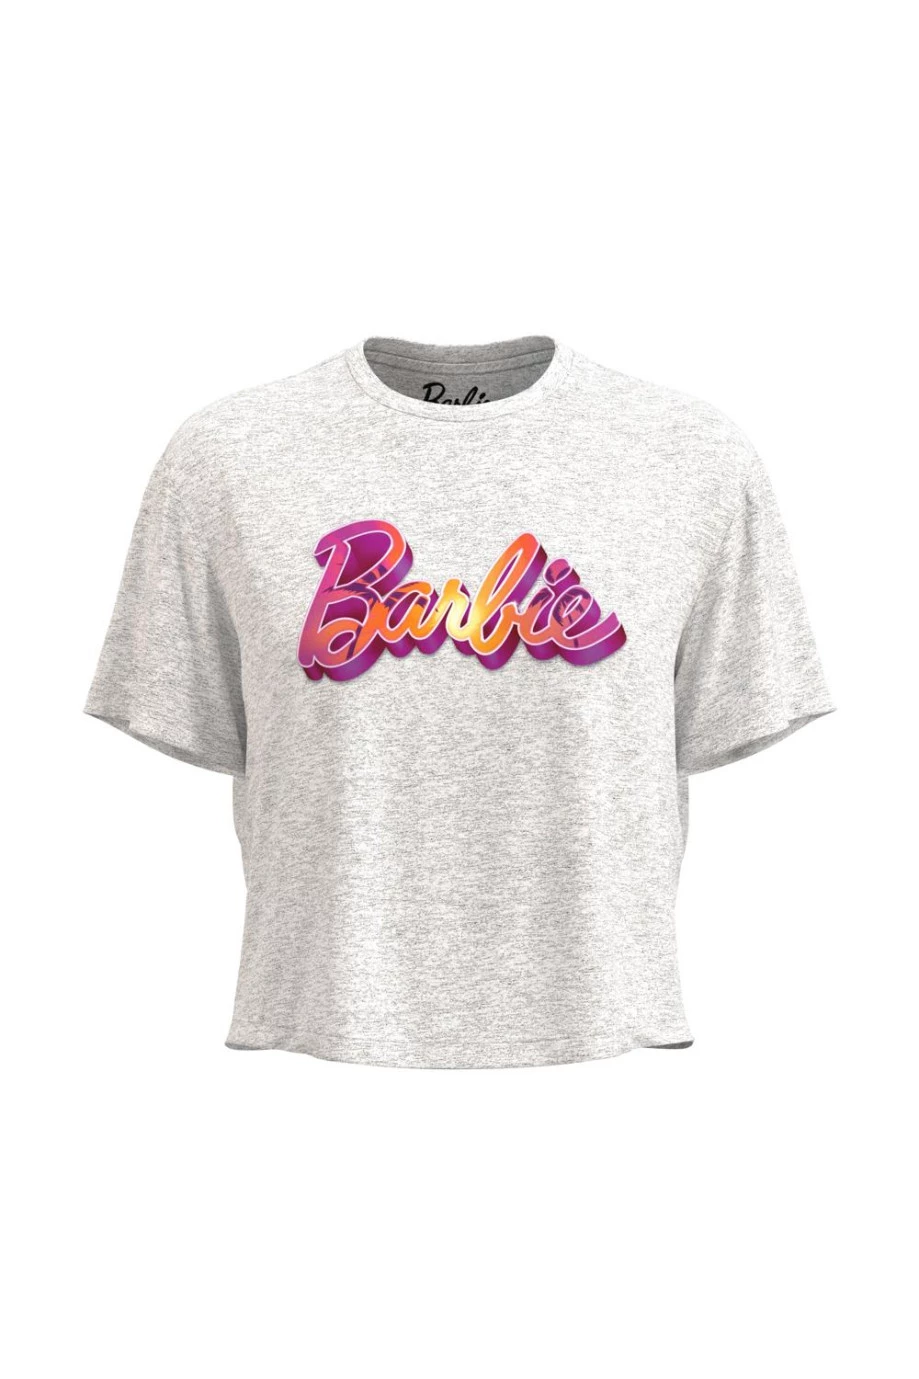 Camiseta unicolor crop top con estampado de Barbie